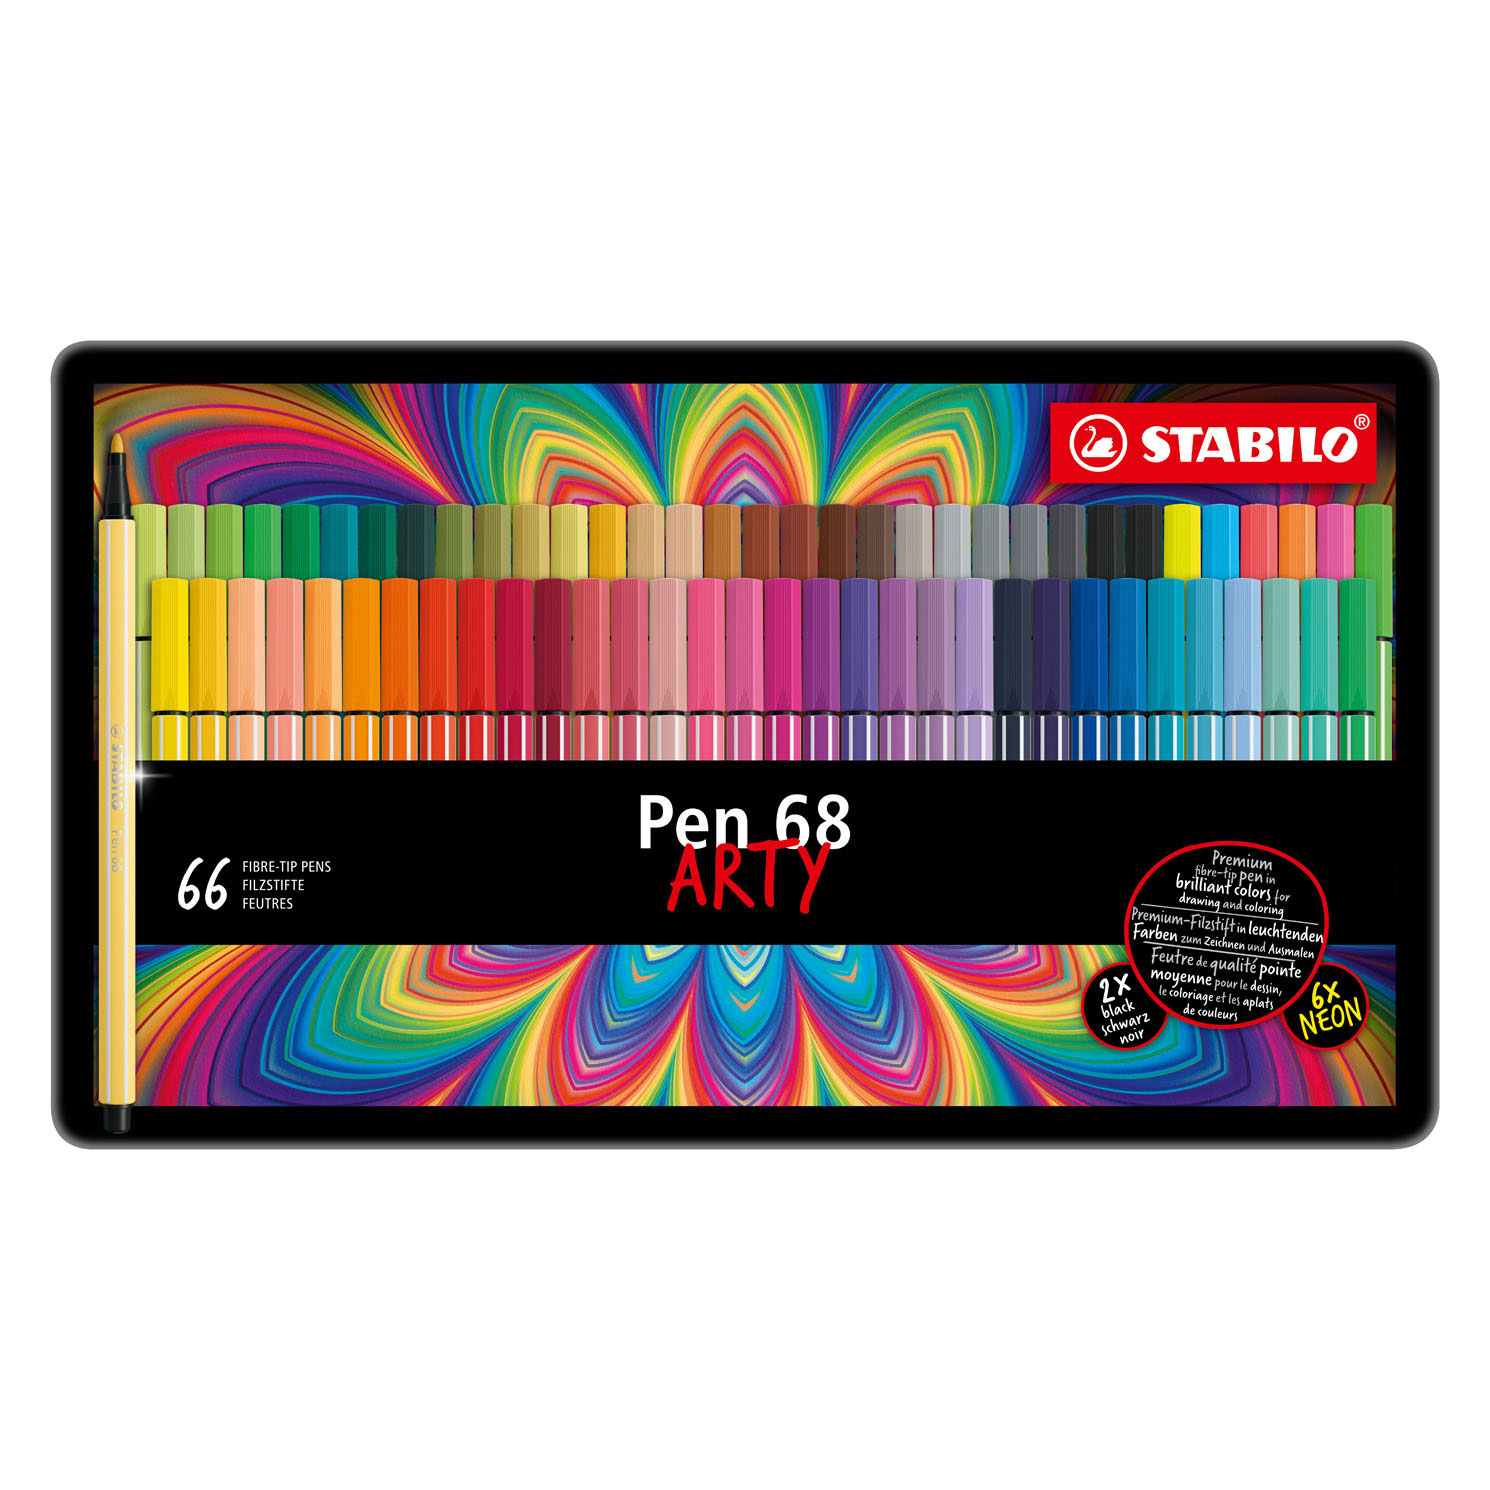 Stabilo Pen 68 Multicolour Felt Pen